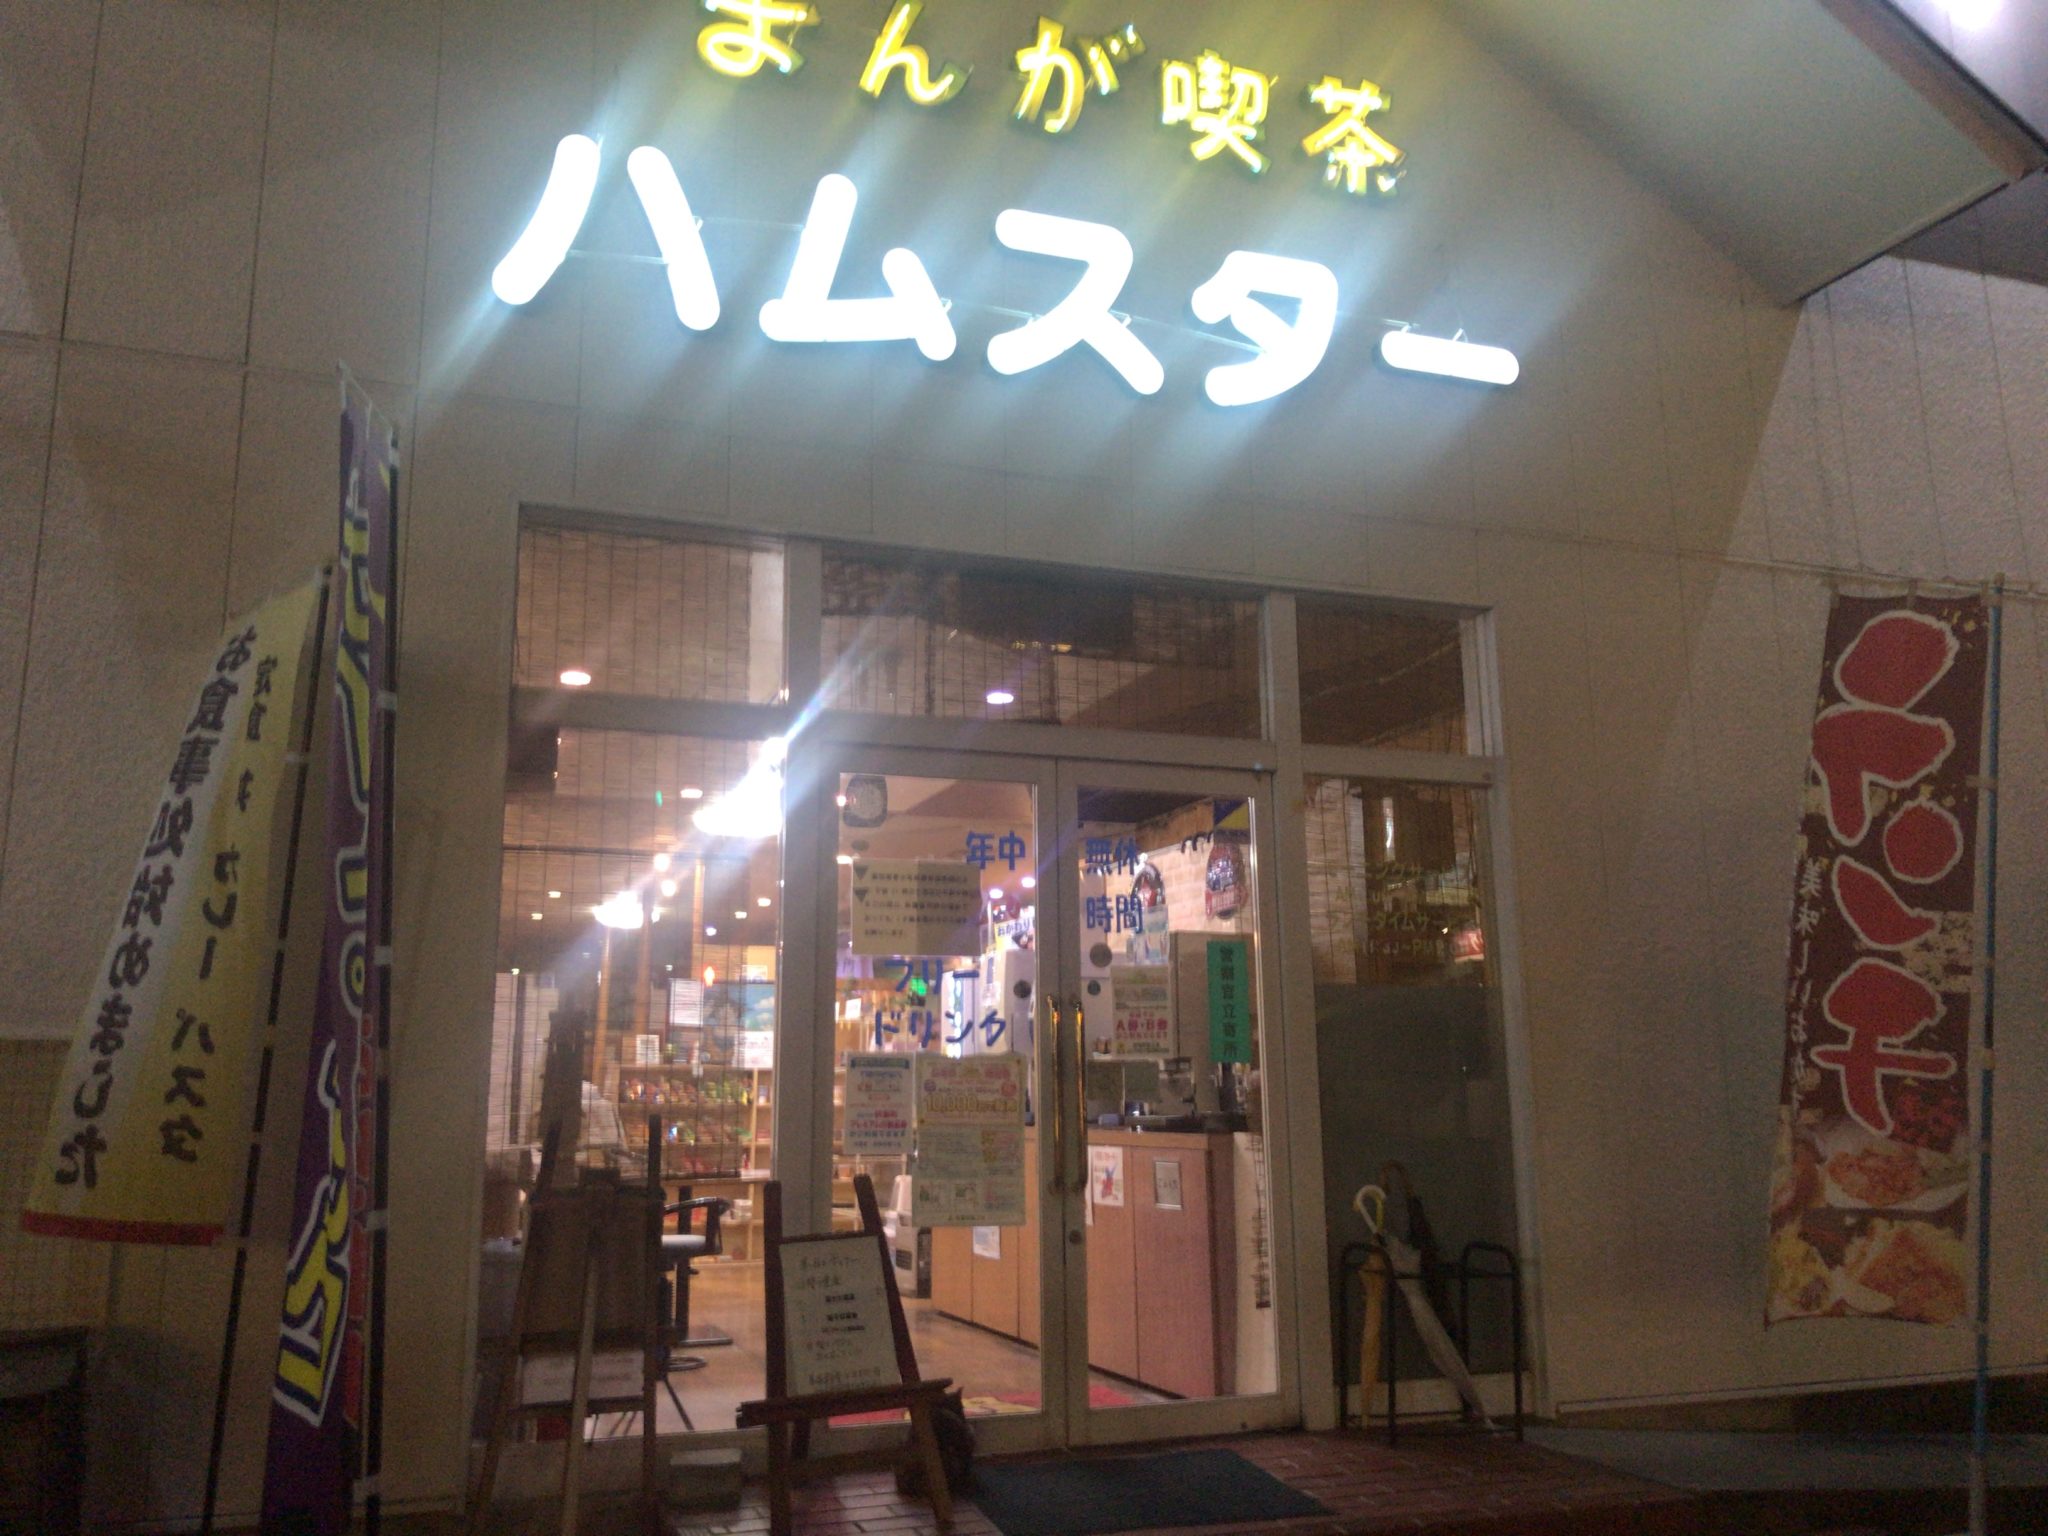 扶桑駅から徒歩3分 まんが喫茶ハムスターをレポート 日本全国のネカフェ 漫画喫茶マップのヒマップ